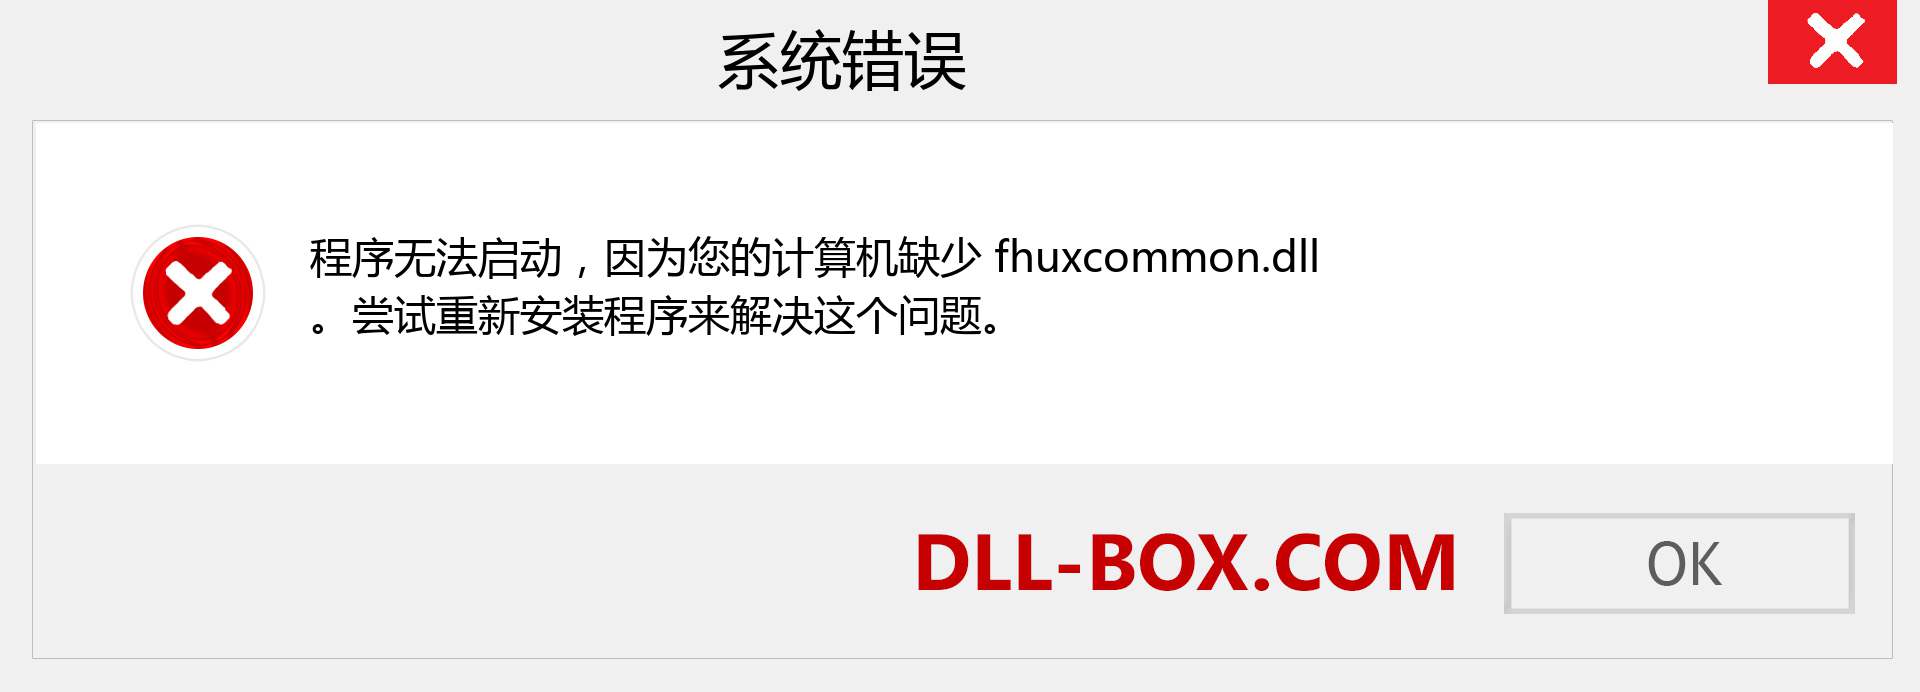 fhuxcommon.dll 文件丢失？。 适用于 Windows 7、8、10 的下载 - 修复 Windows、照片、图像上的 fhuxcommon dll 丢失错误